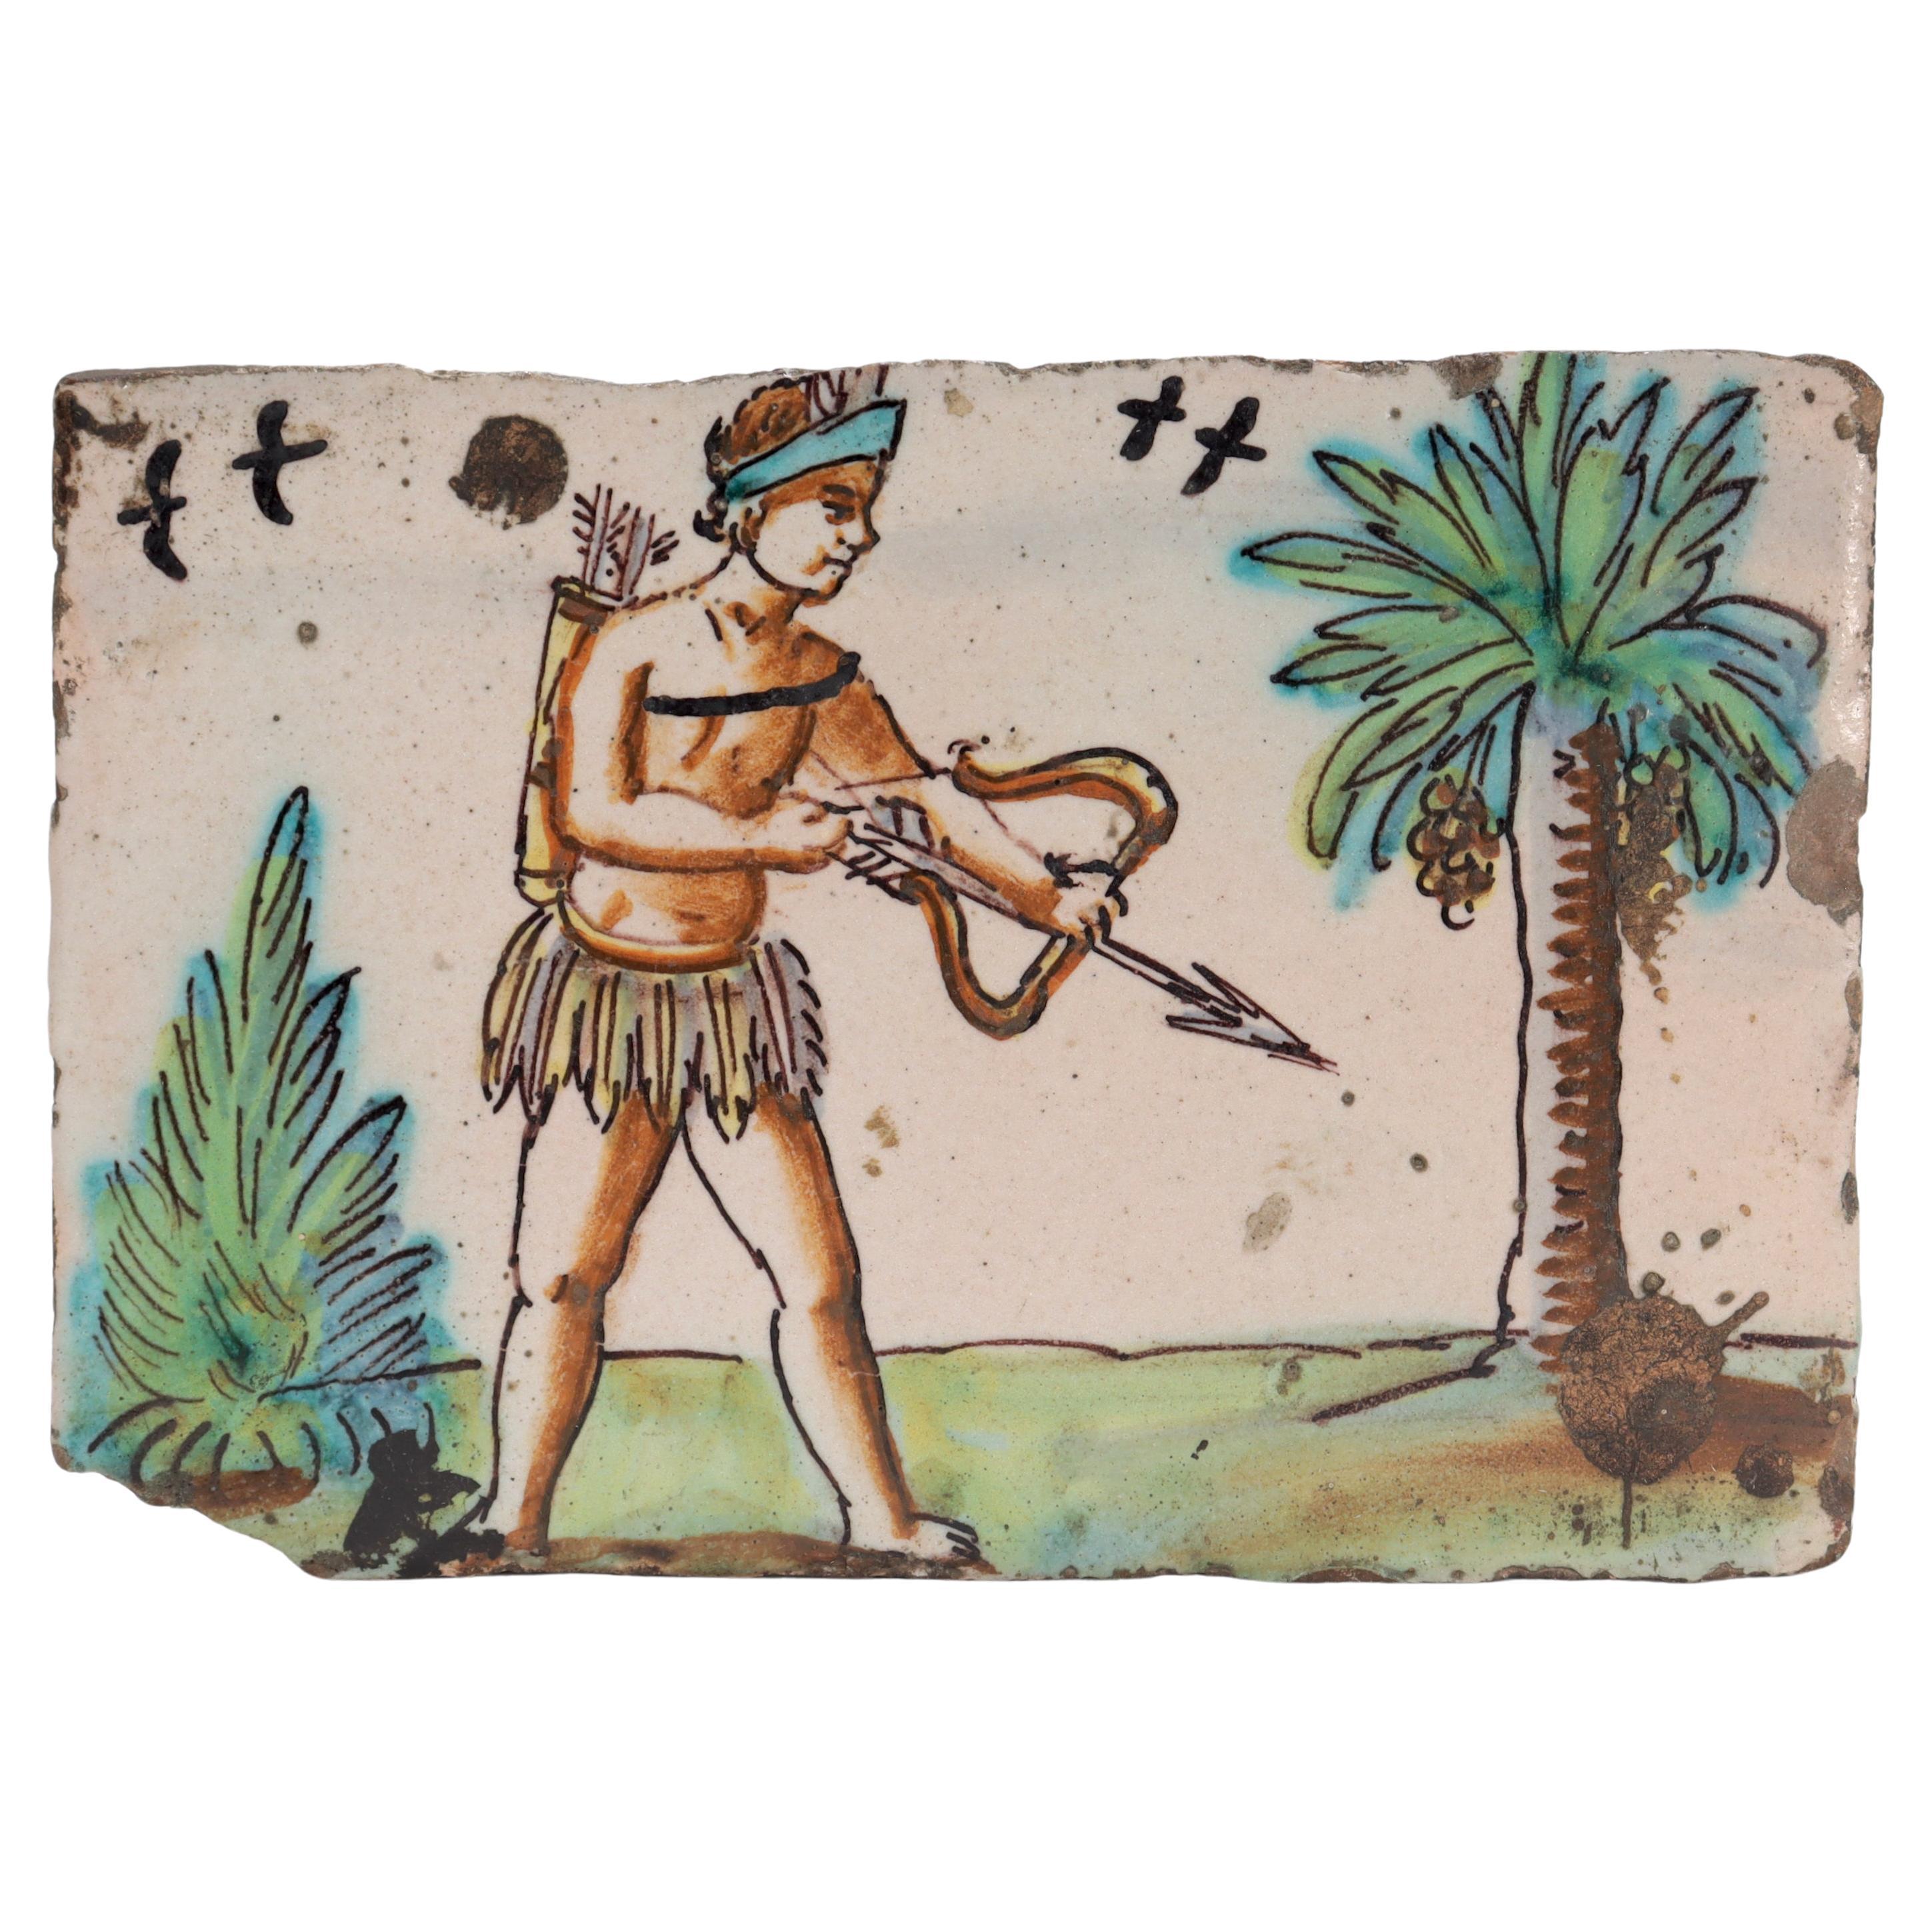 Antike holländische Terrakotta-Keramikfliese aus dem 18. Jahrhundert, die einen amerikanischen Ureinwohner darstellt